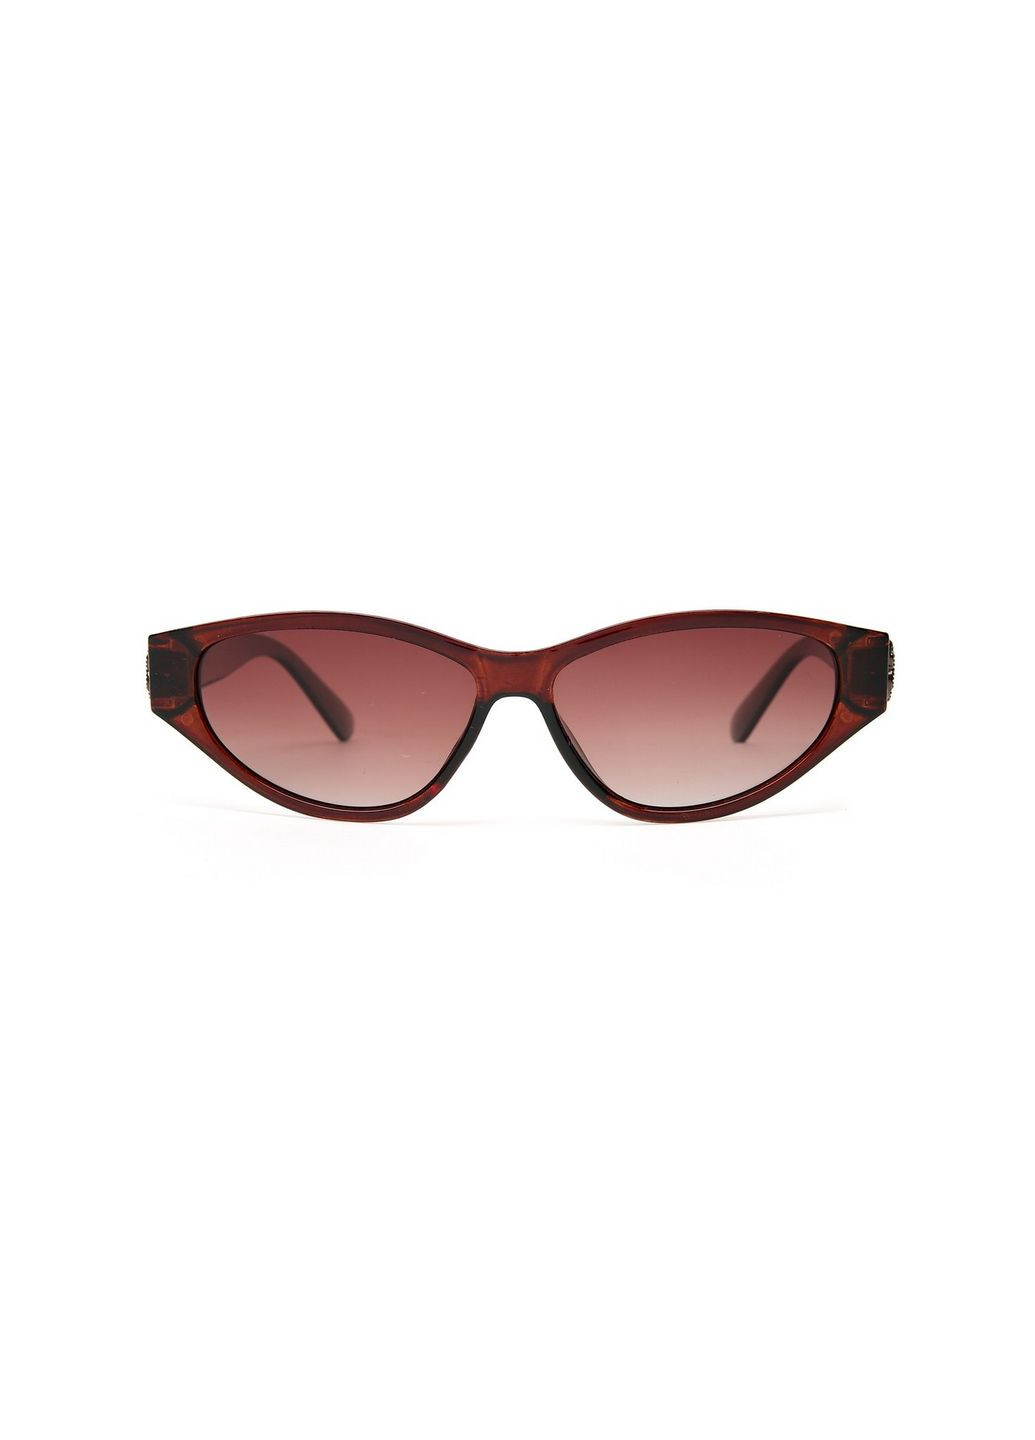 Солнцезащитные очки с поляризацией Фэшн-классика женские LuckyLOOK 111-486 (289360904)